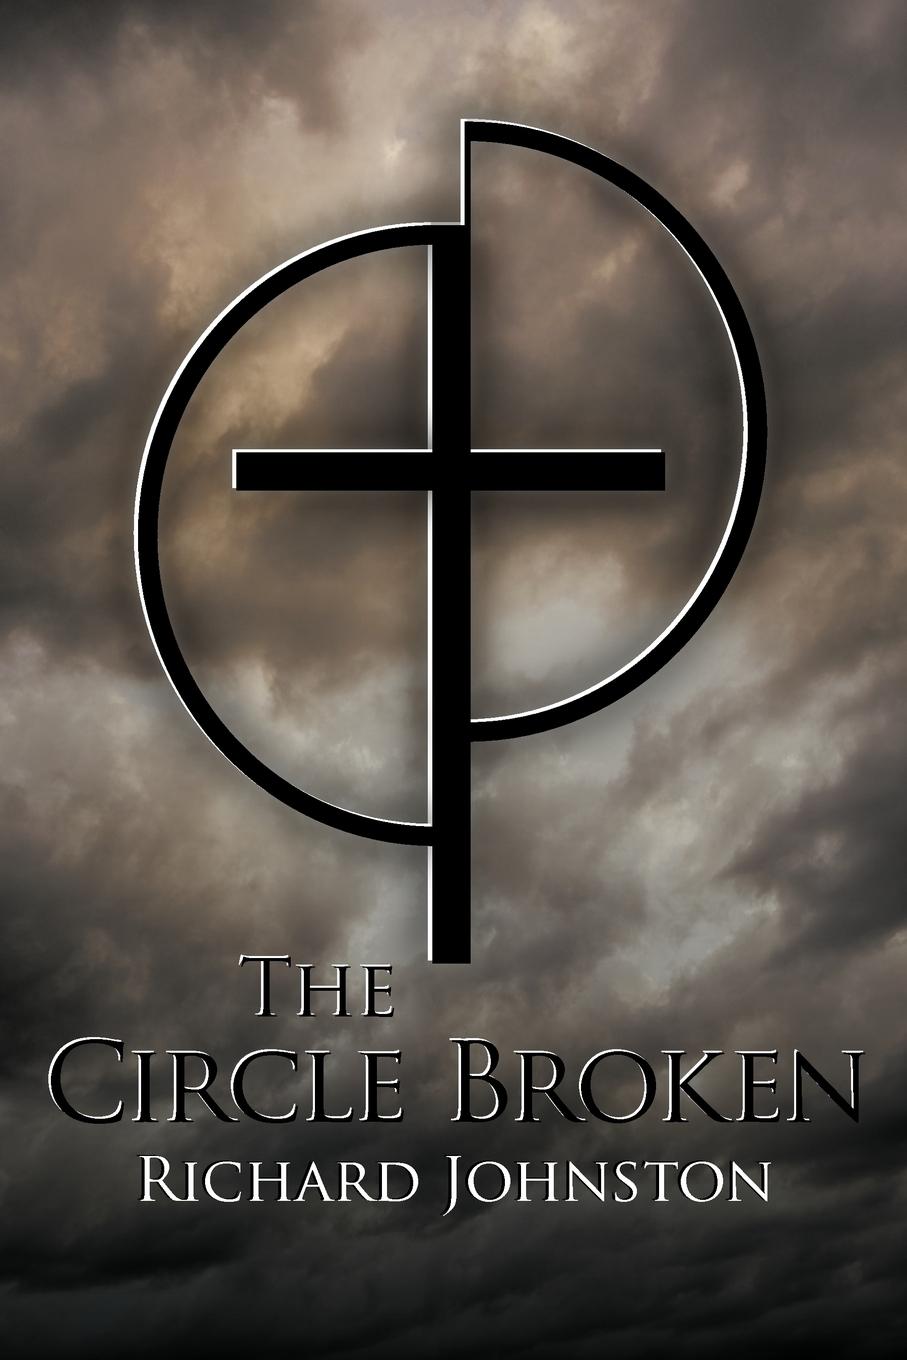 The Circle Broken - Richard Johnston, Johnston